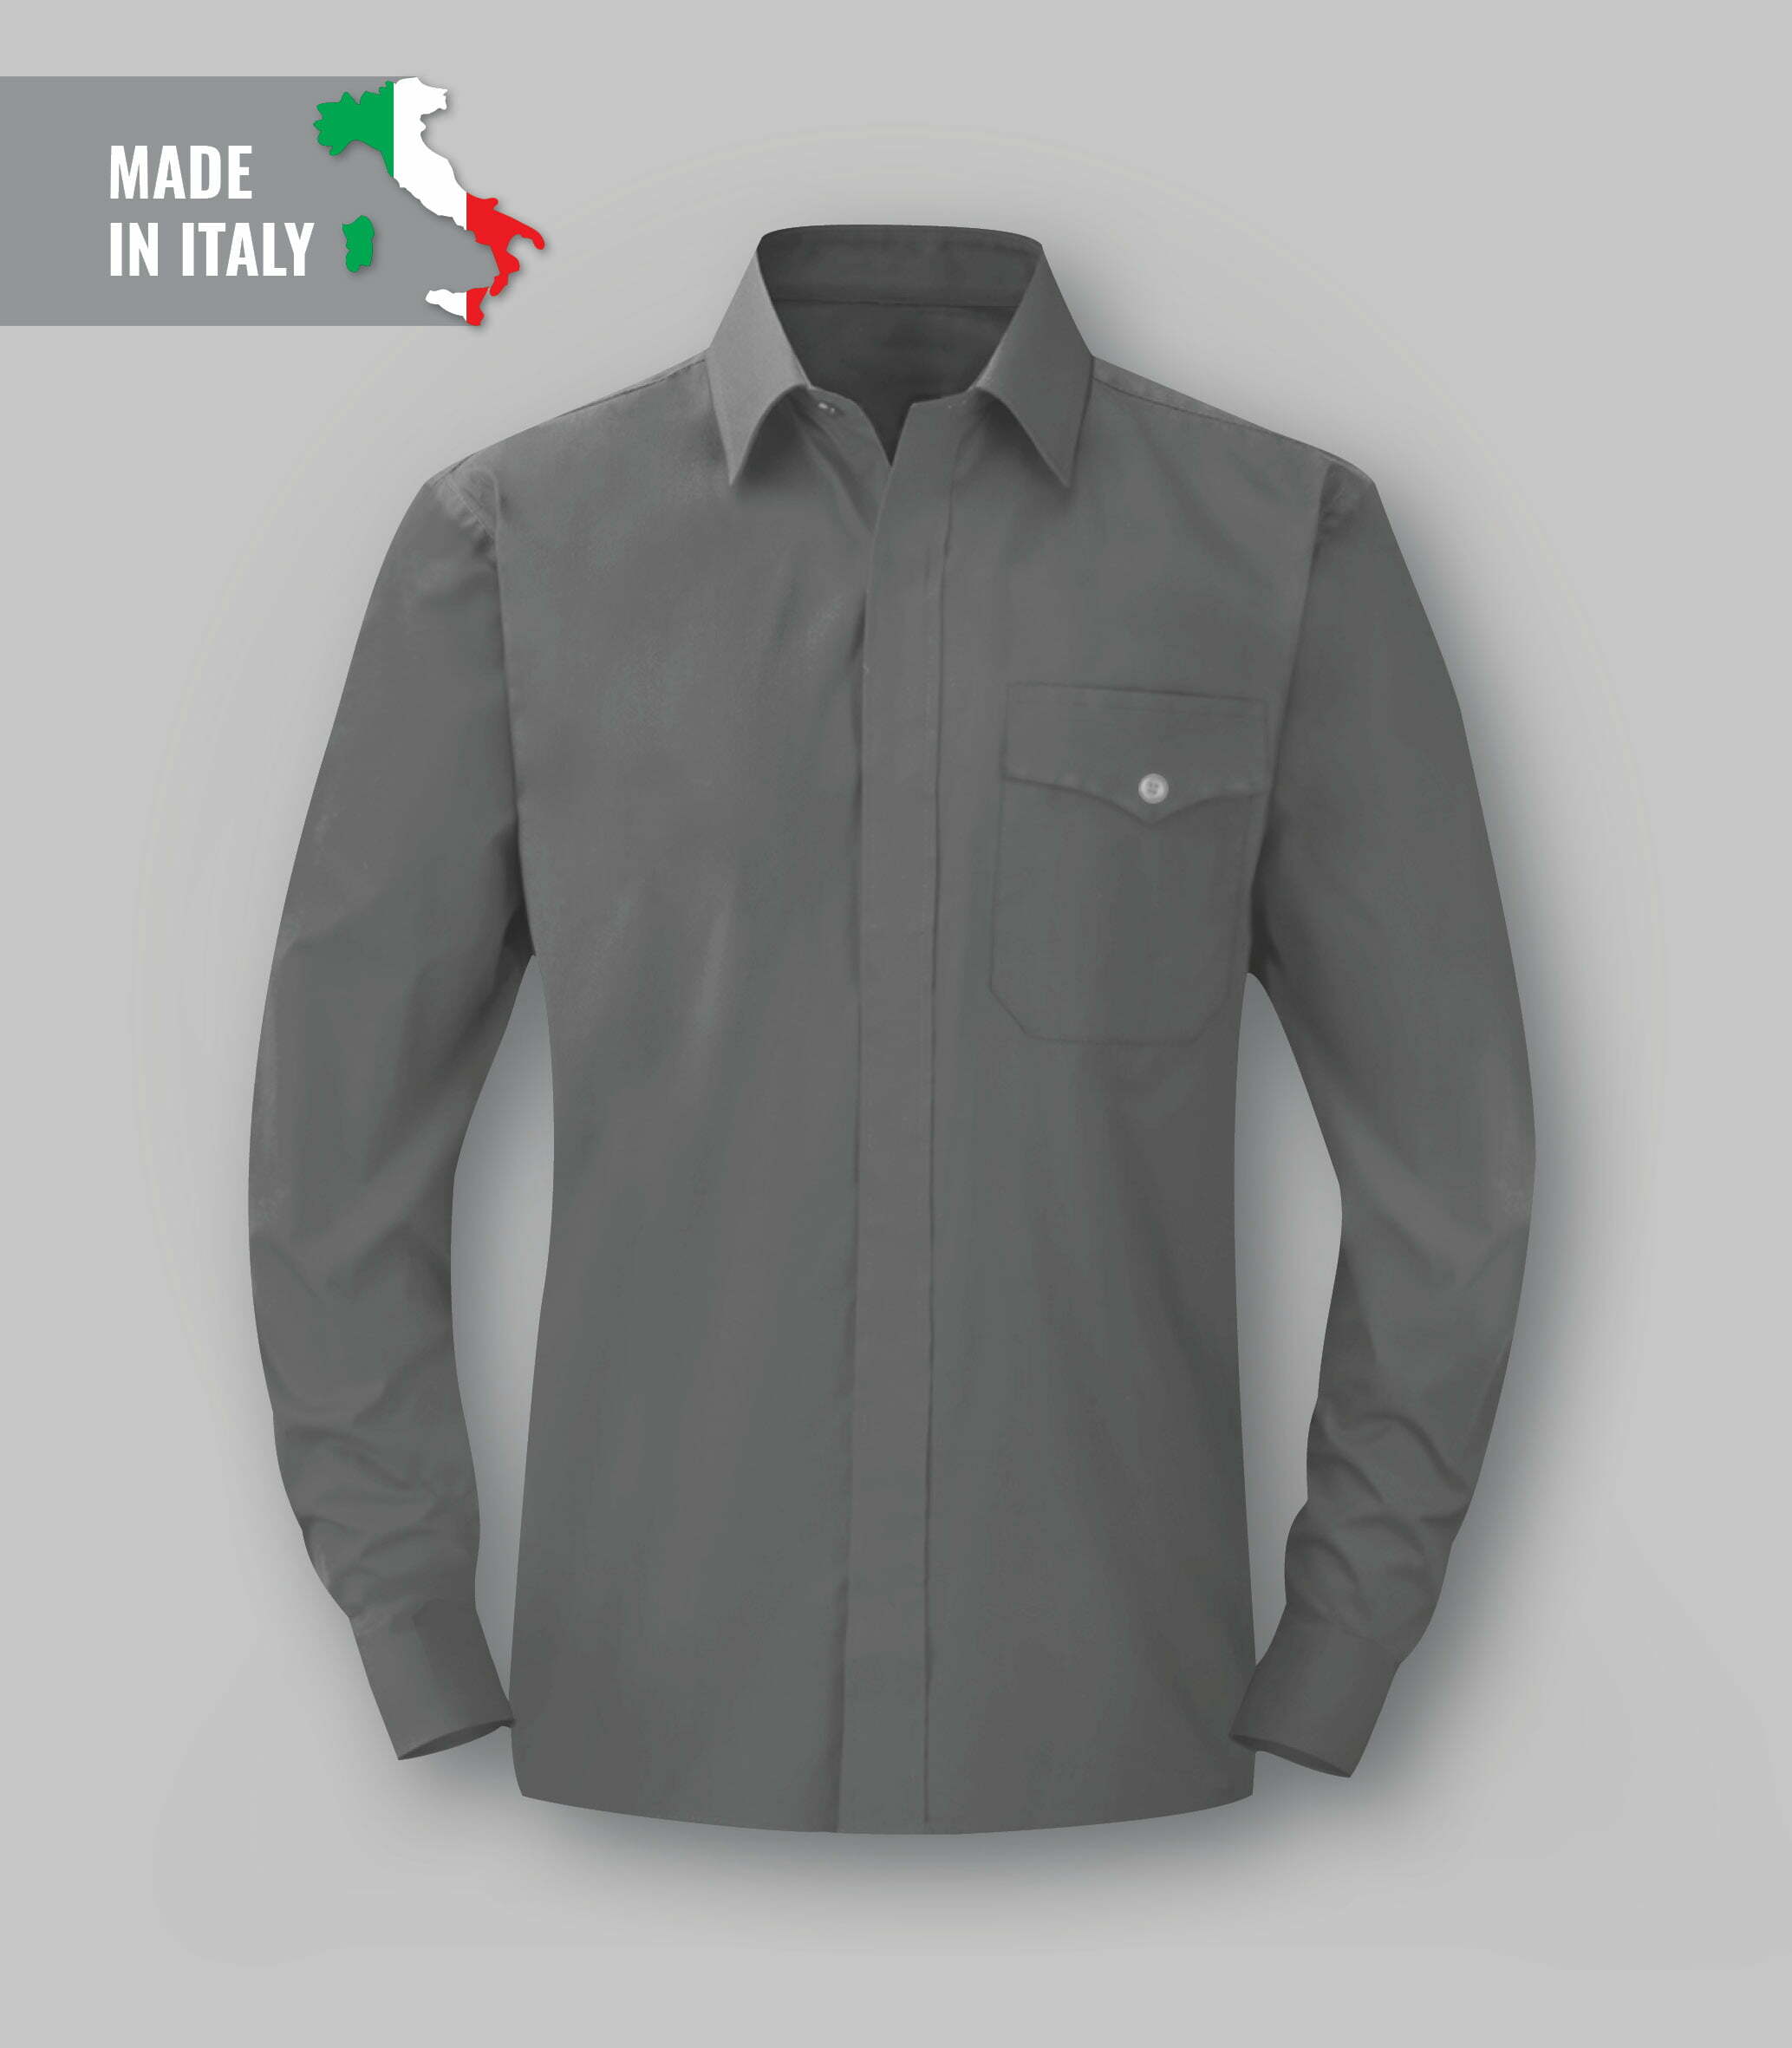 FR, antistatic, acid-resistant shirt-abbigliamentocertificato.com